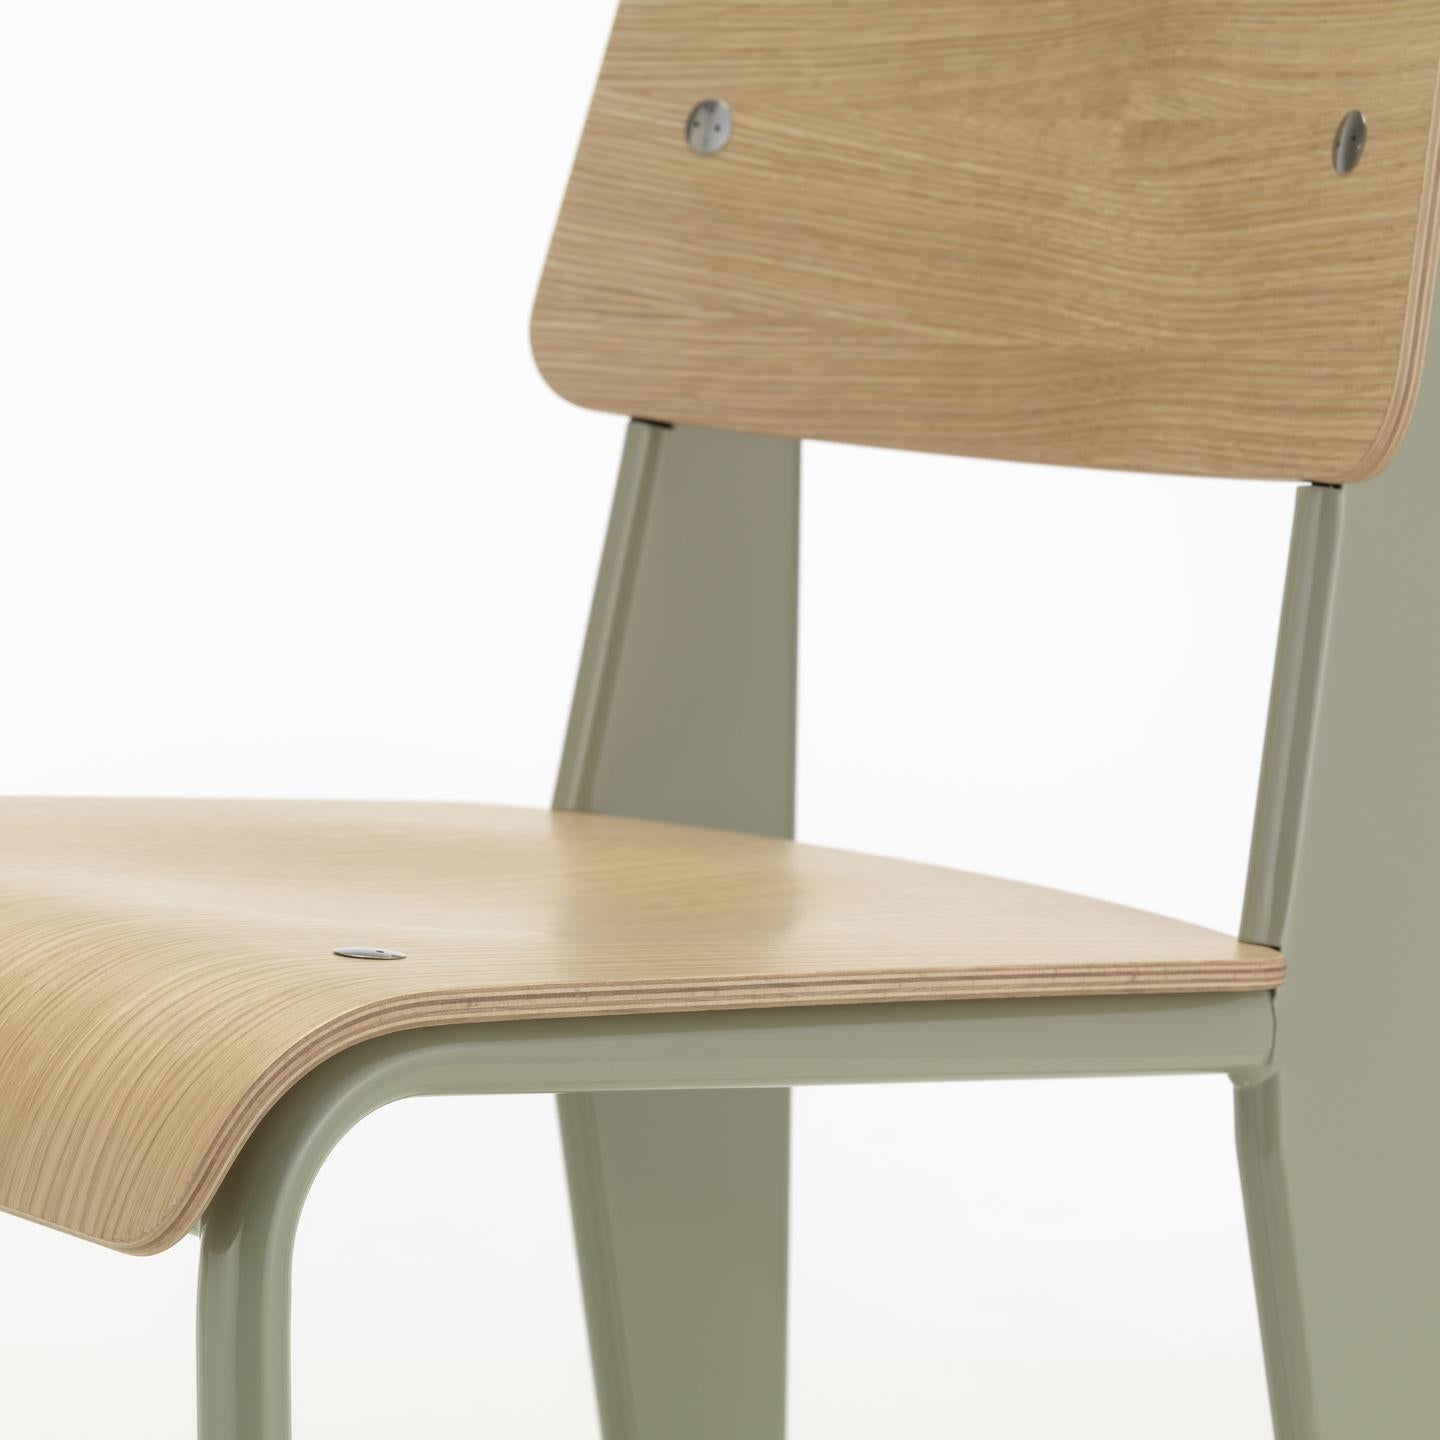 Jean Prouvé Chaise standard en chêne naturel et métal gris pour Vitra. La chaise Standard est l'un des premiers chefs-d'œuvre du designer et ingénieur français Jean Prouvé. Conçue à l'origine en 1934, la Standard est devenue l'un des classiques les